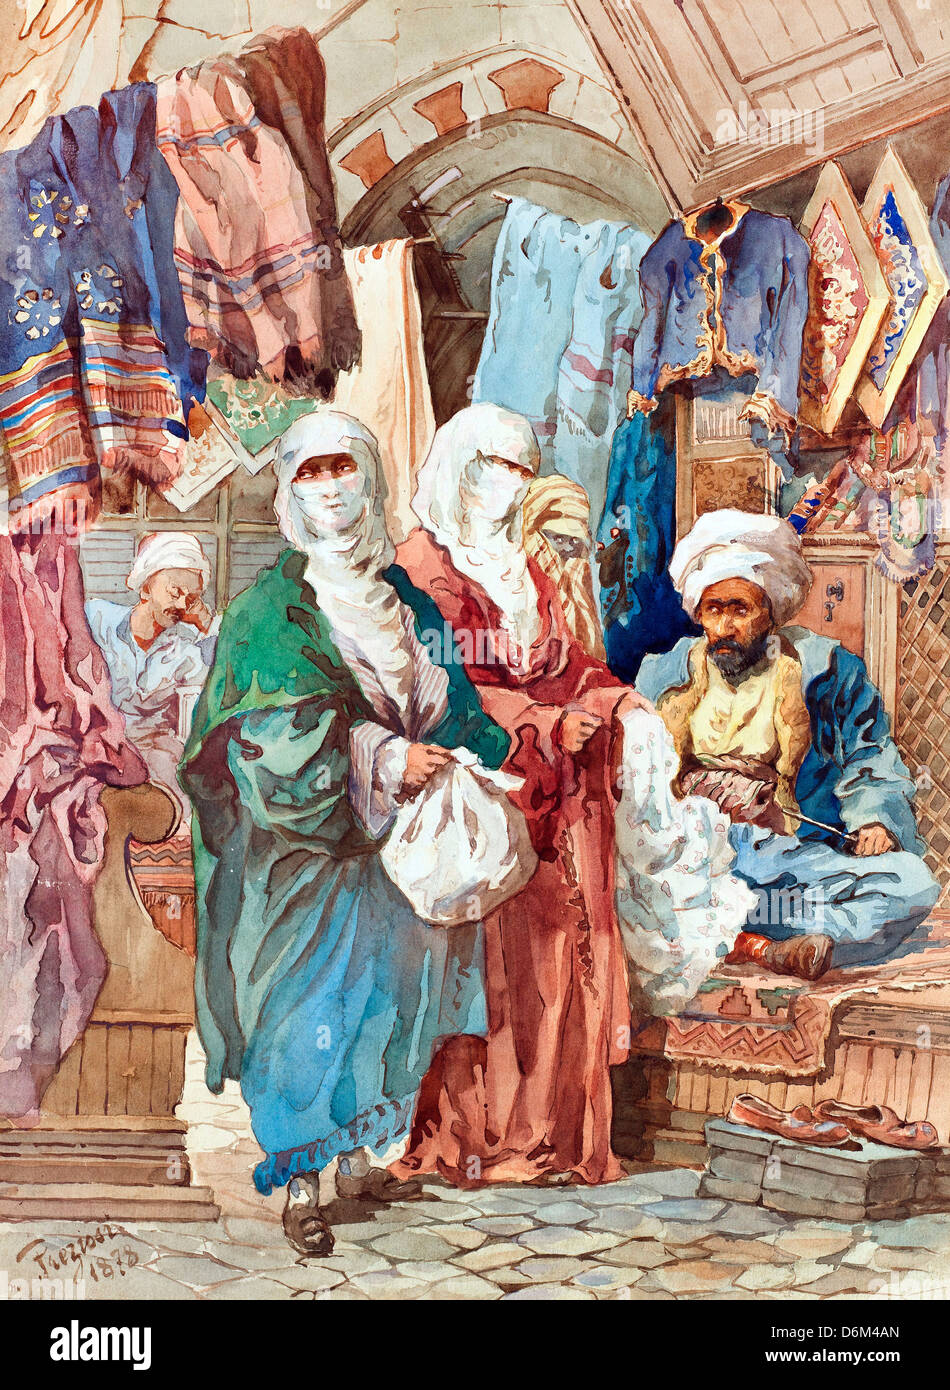 Amadeo preziosi, il bazaar di seta. Xix secolo. Acquerello su carta. Museo di Pera, Istanbul Foto Stock